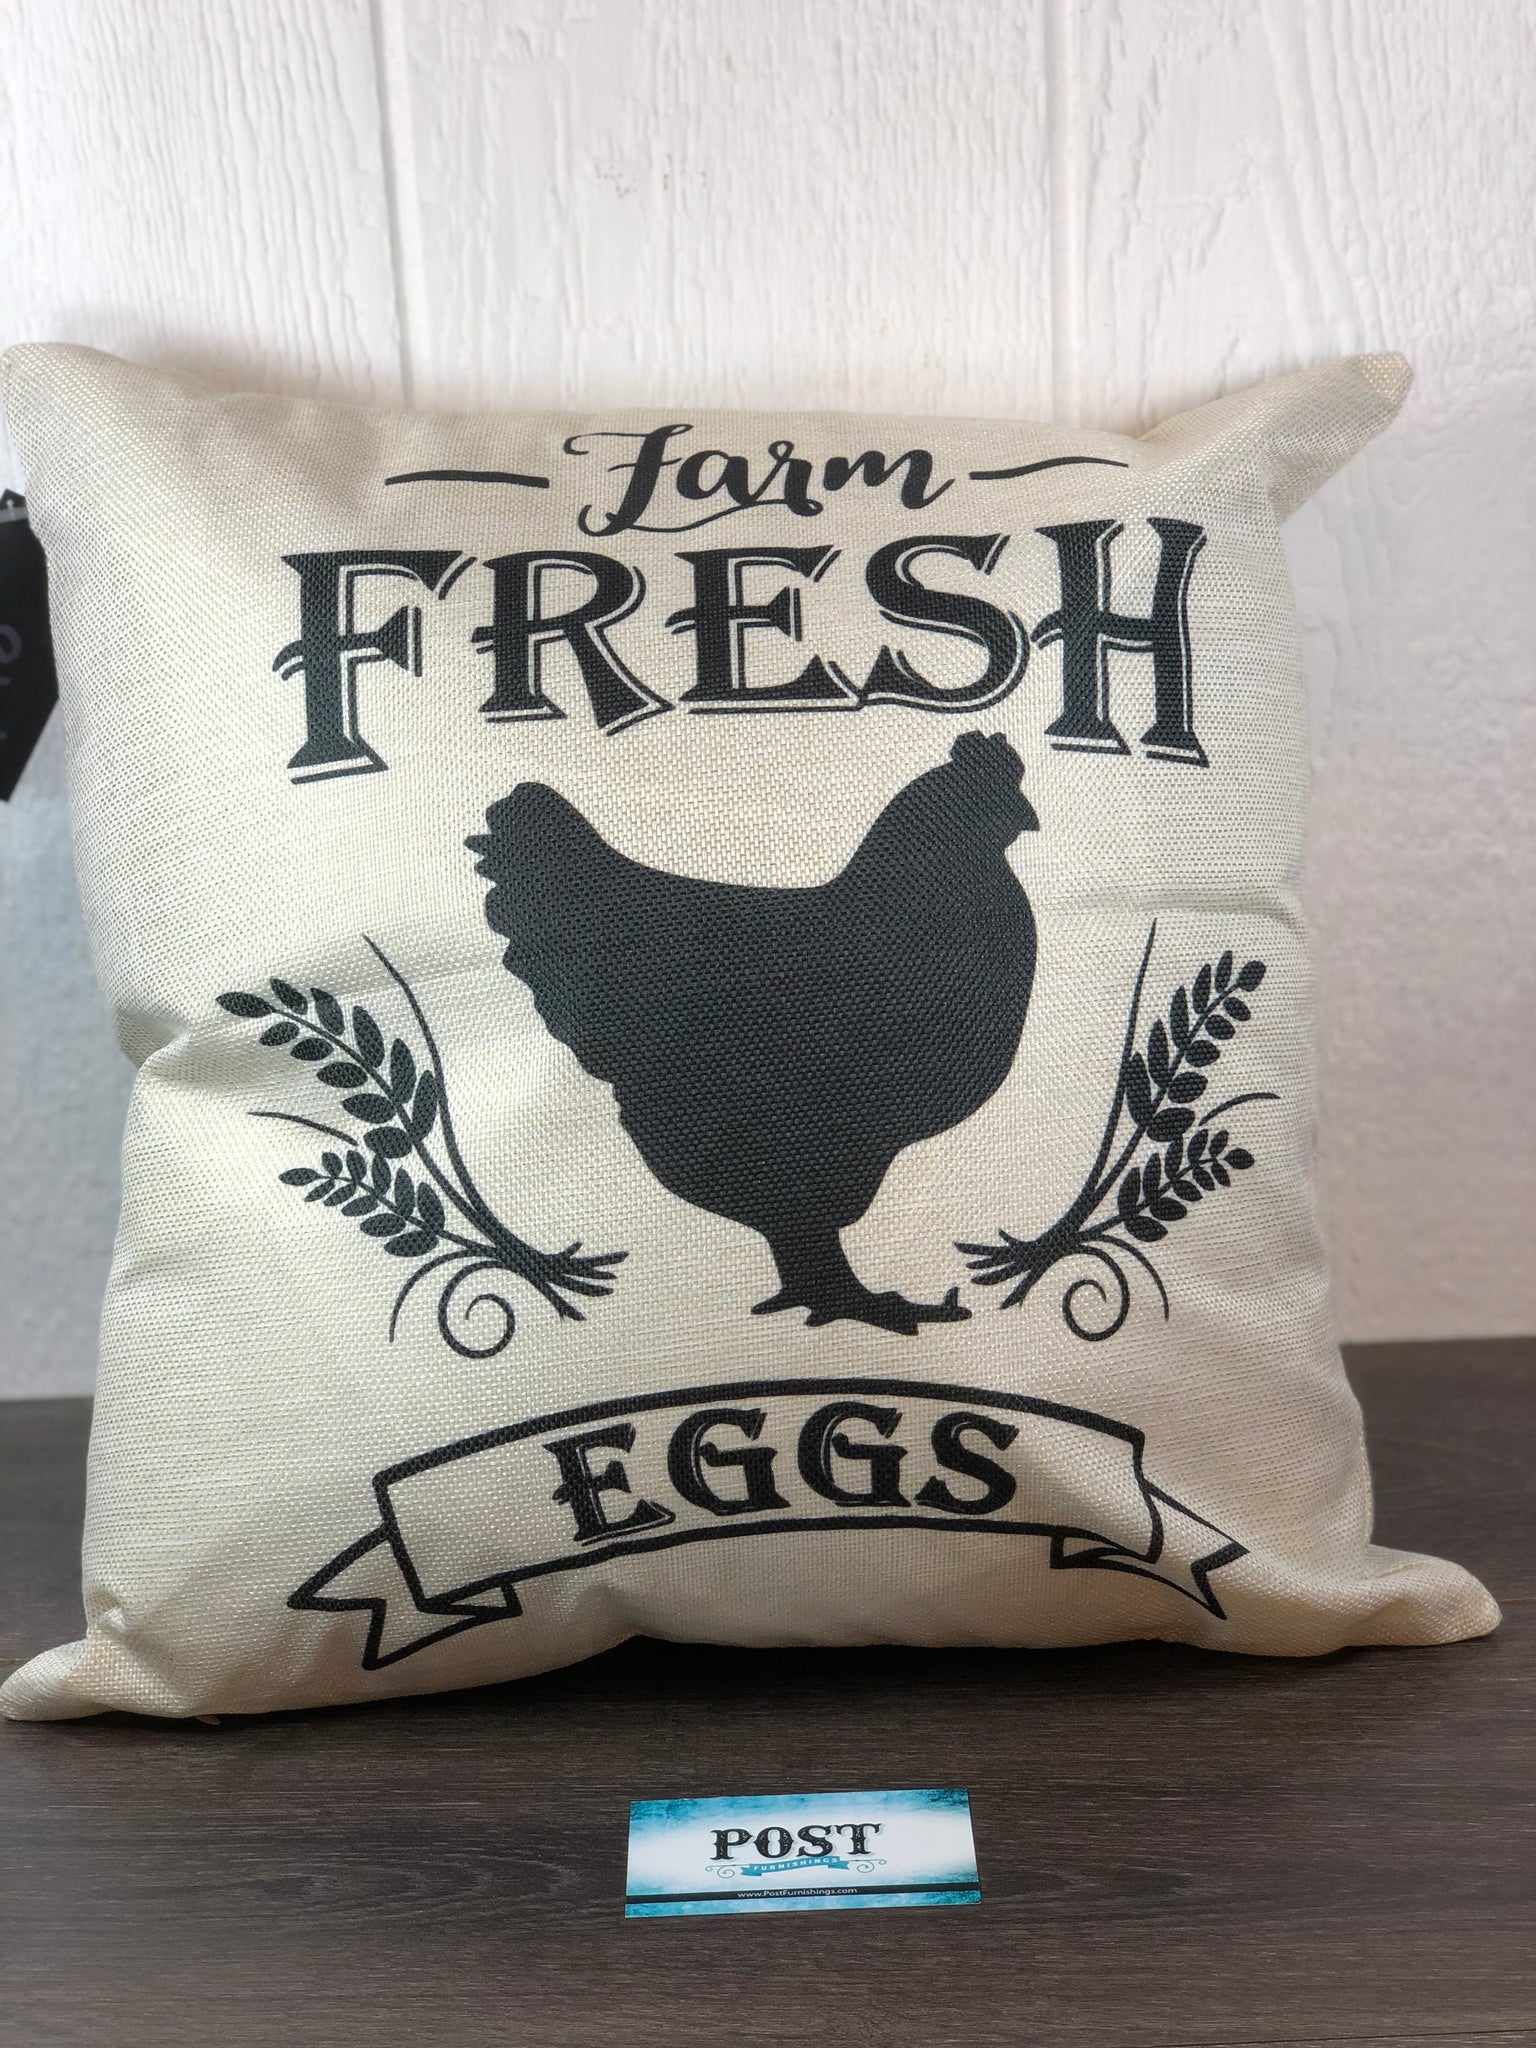 Farm Fresh Eggs Pillow